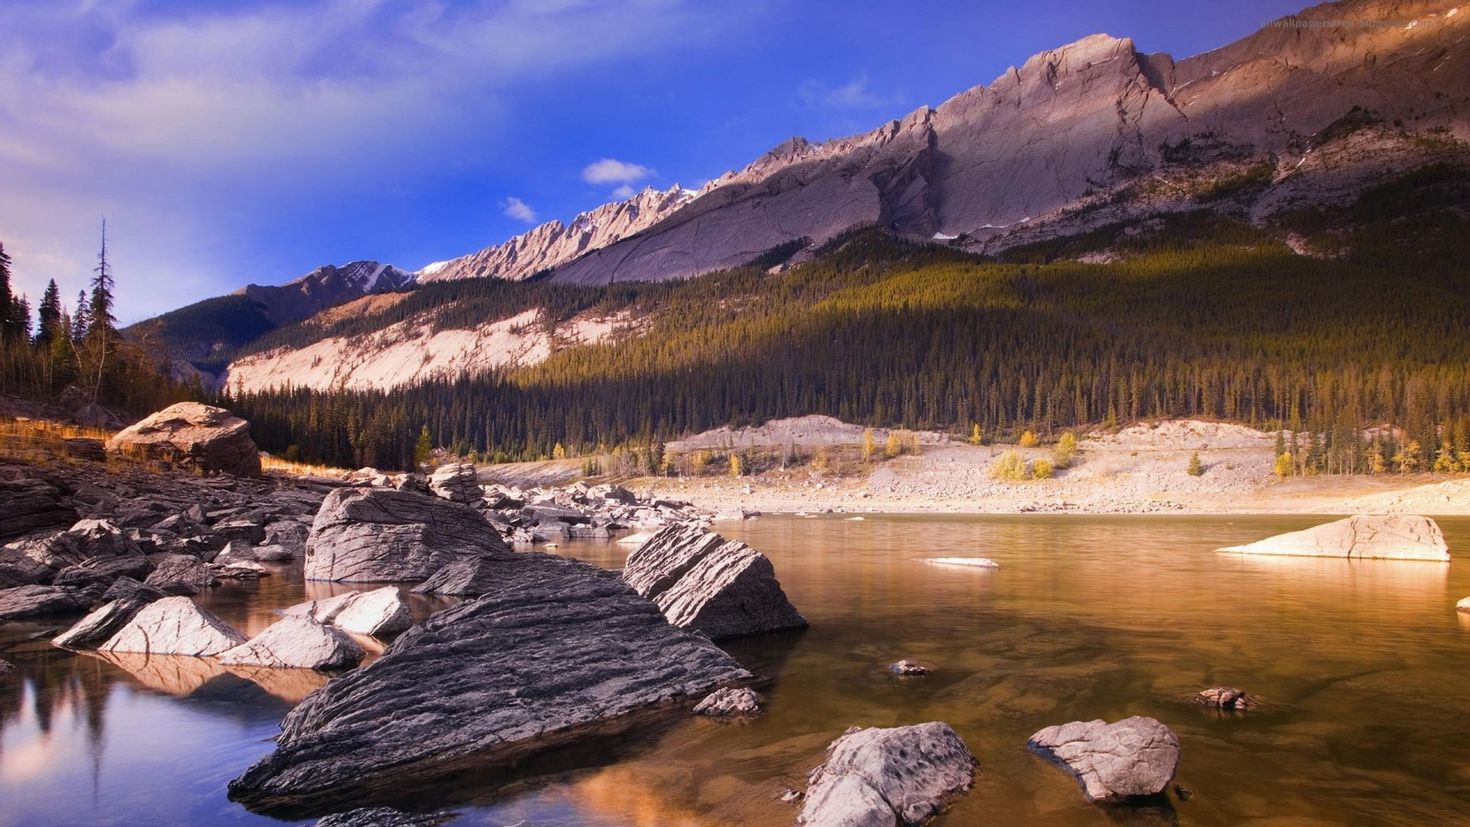 Фулл фотка. Канада, Джаспер, озеро. Красивая природа. Пейзажи Канады. Горы и реки.